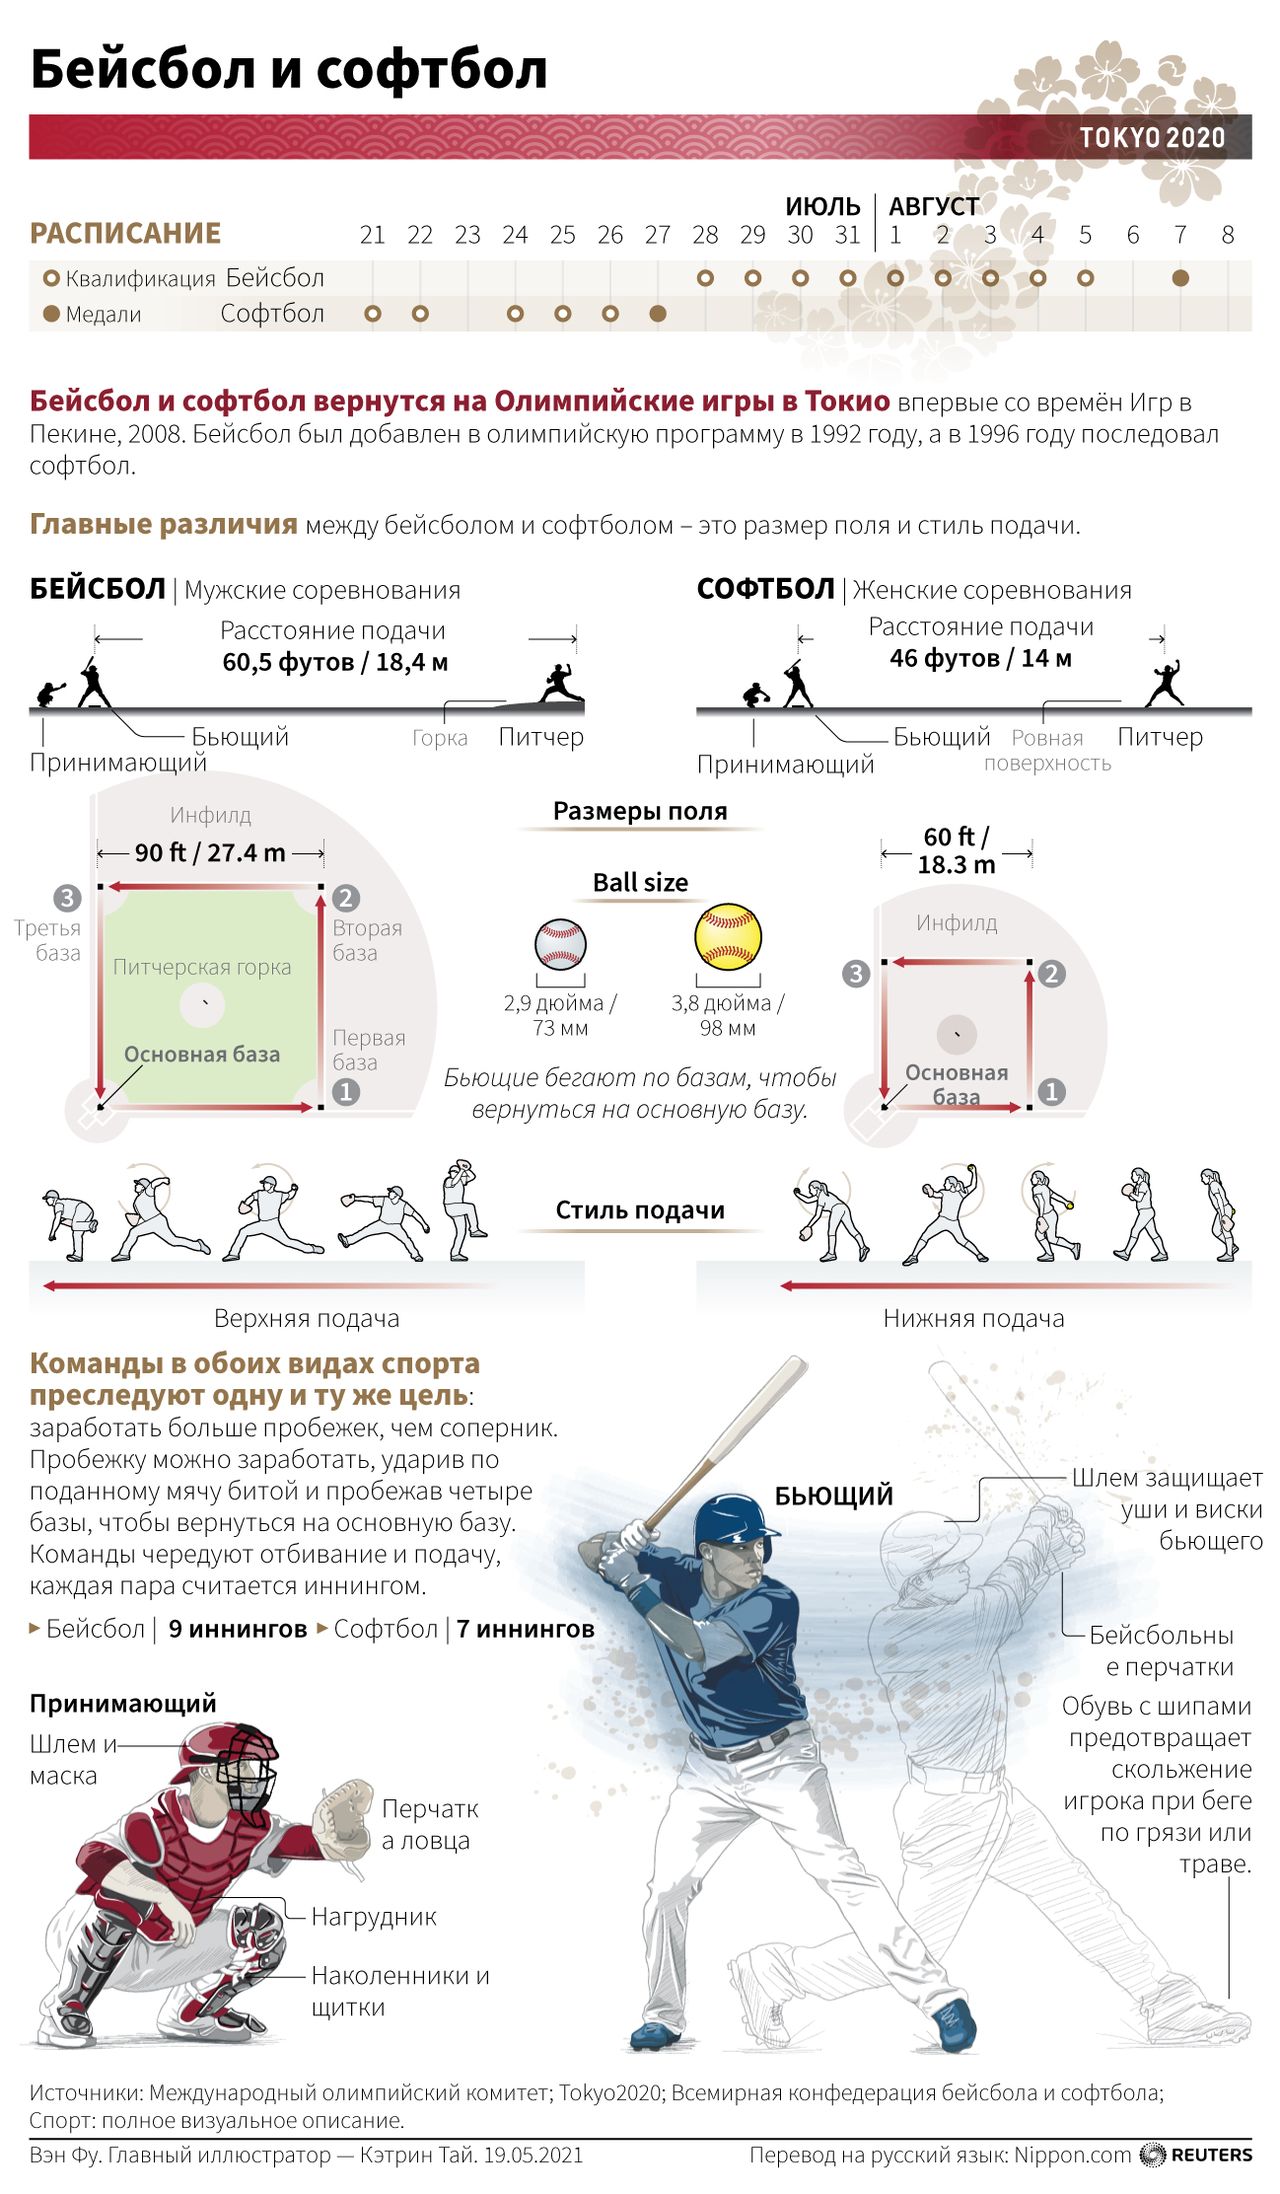 Бейсбол и софтбол: Олимпийские игры 2020 года в Токио - Информация о соревнованиях